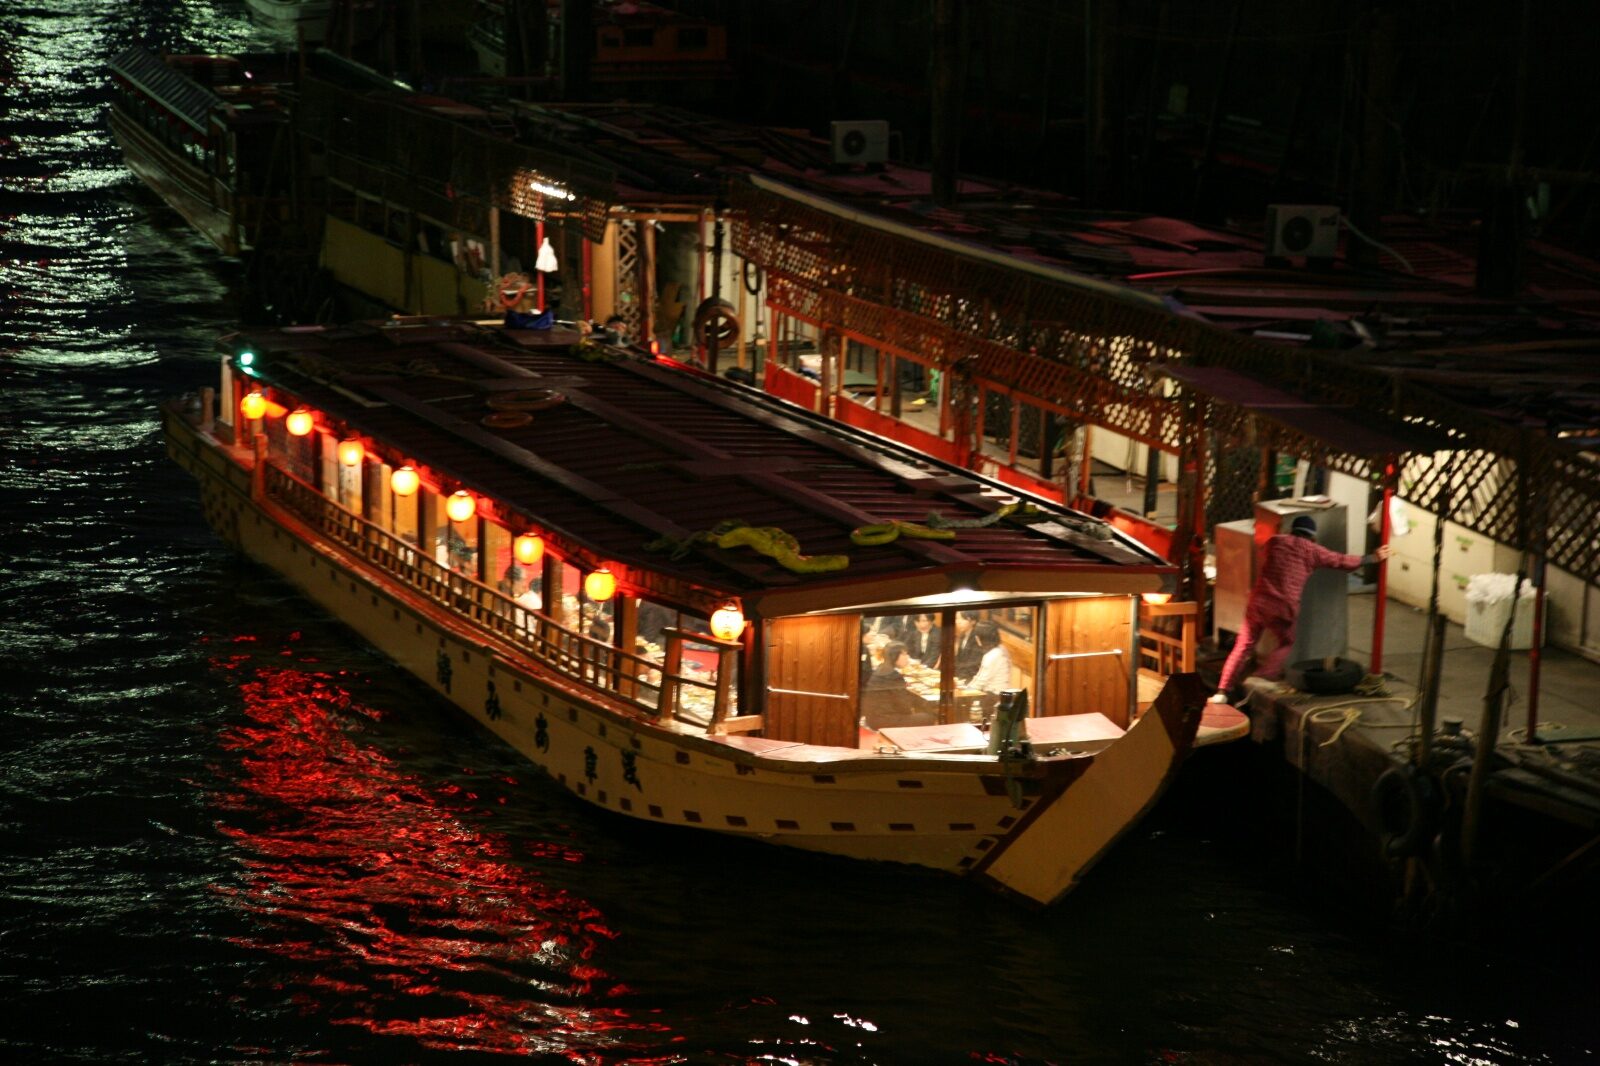 隅田川に浮かぶ屋形船